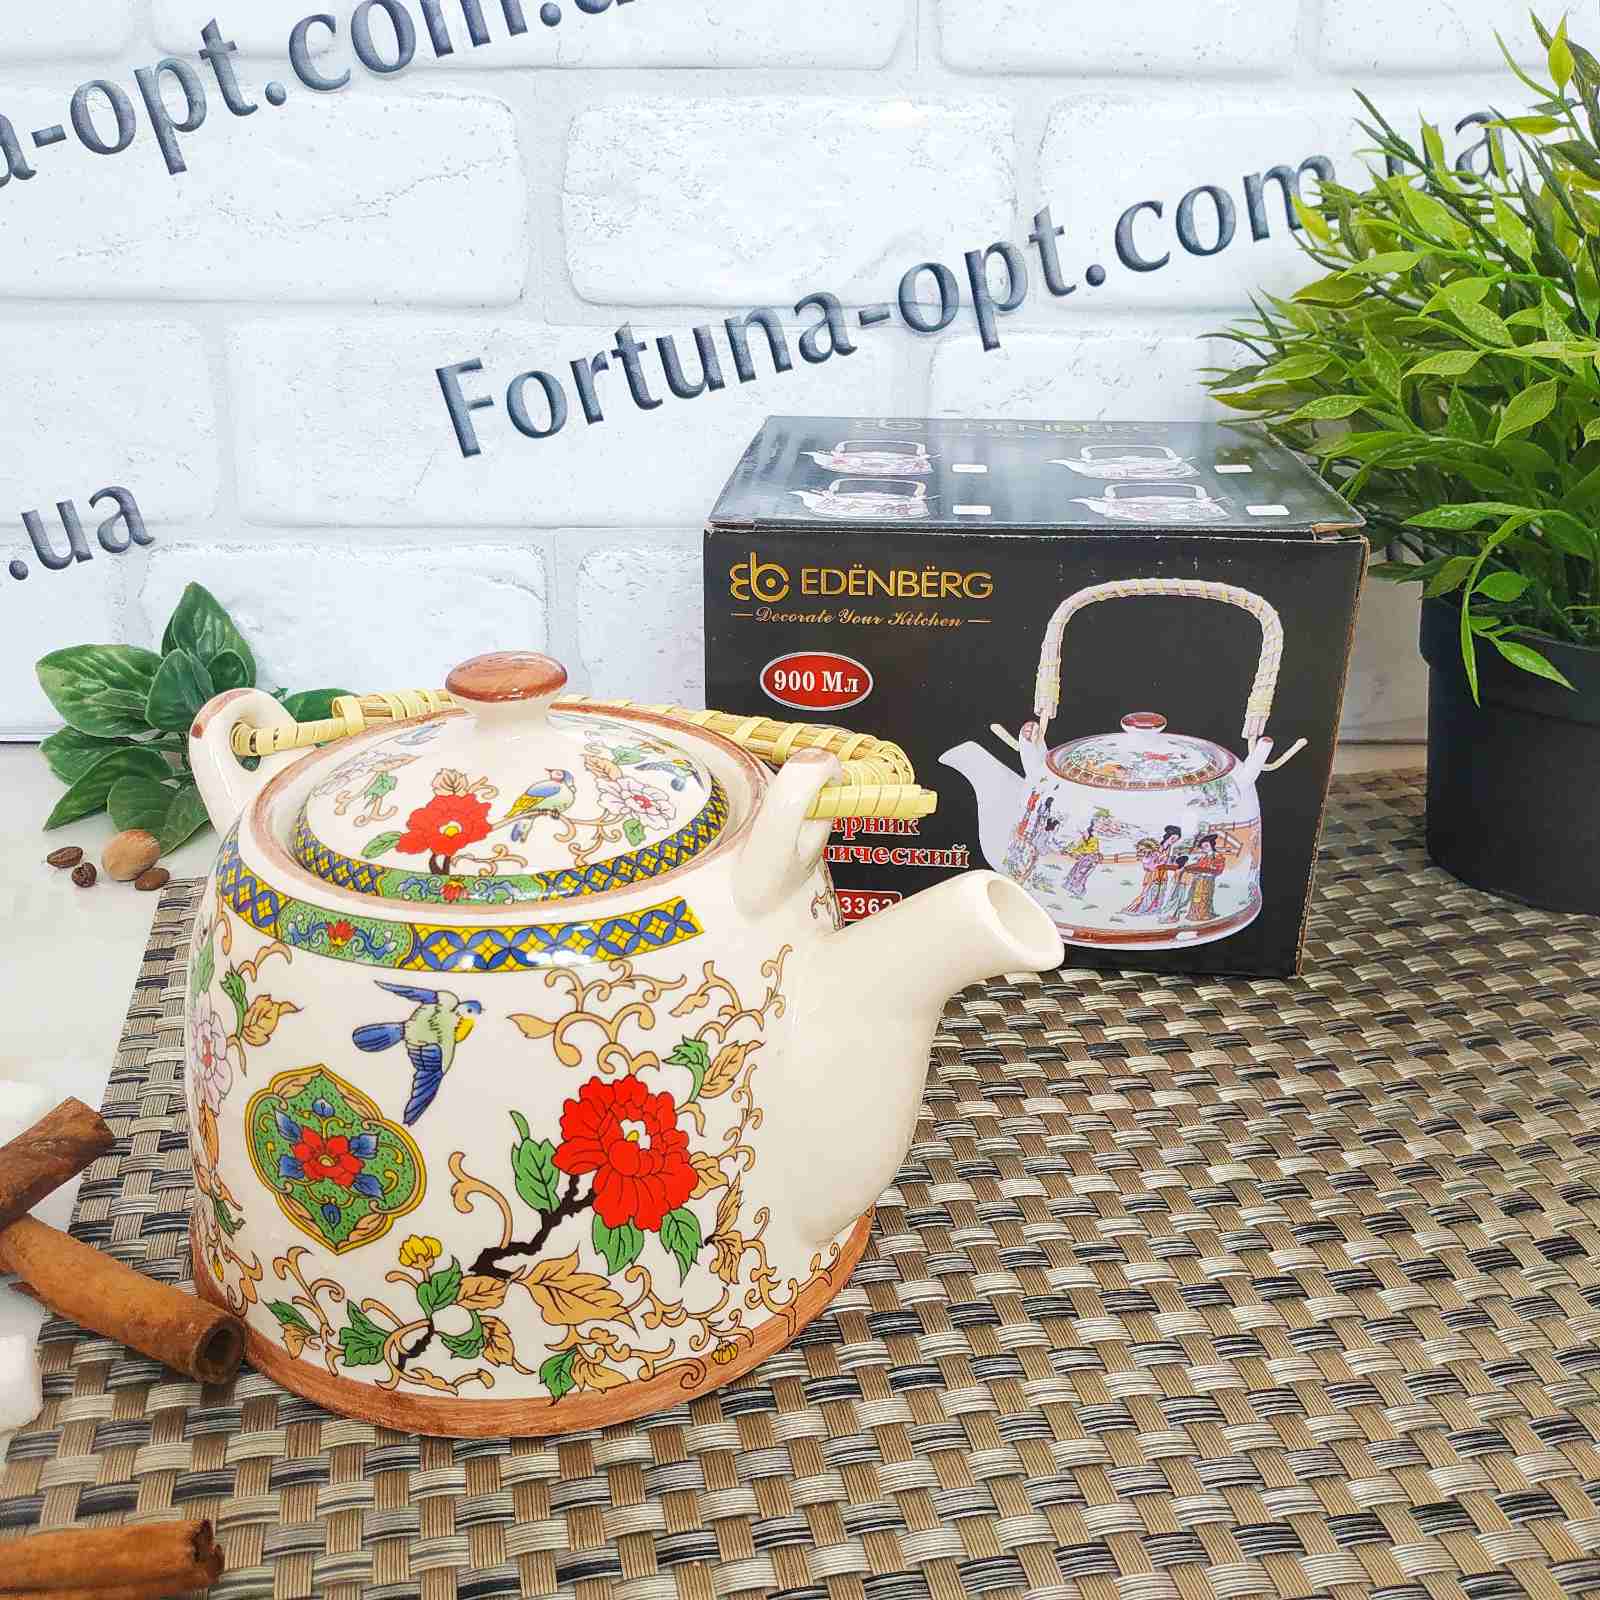 Заварочный чайник в китайском стиле (керамика) Edenberg EB - 3362 ✅ базовая цена $6.14 ✔ Опт ✔ Скидки ✔ Заходите! - Интернет-магазин ✅ ;Фортуна-опт ✅